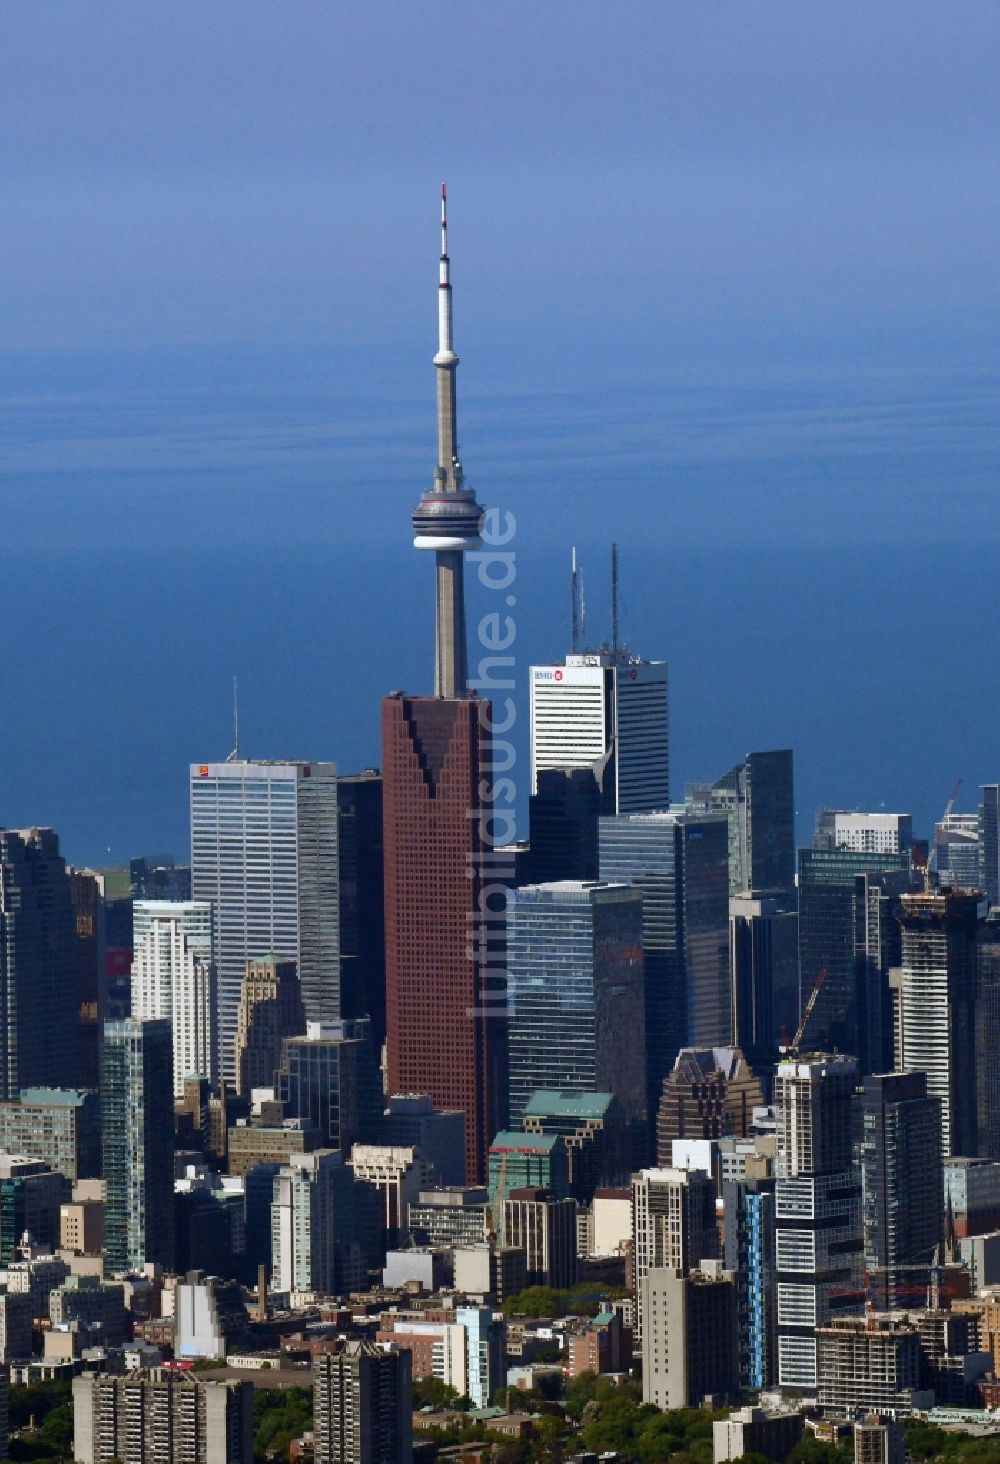 Toronto aus der Vogelperspektive: Stadtzentrum mit der Skyline im Innenstadtbereich in Toronto in Ontario, Kanada